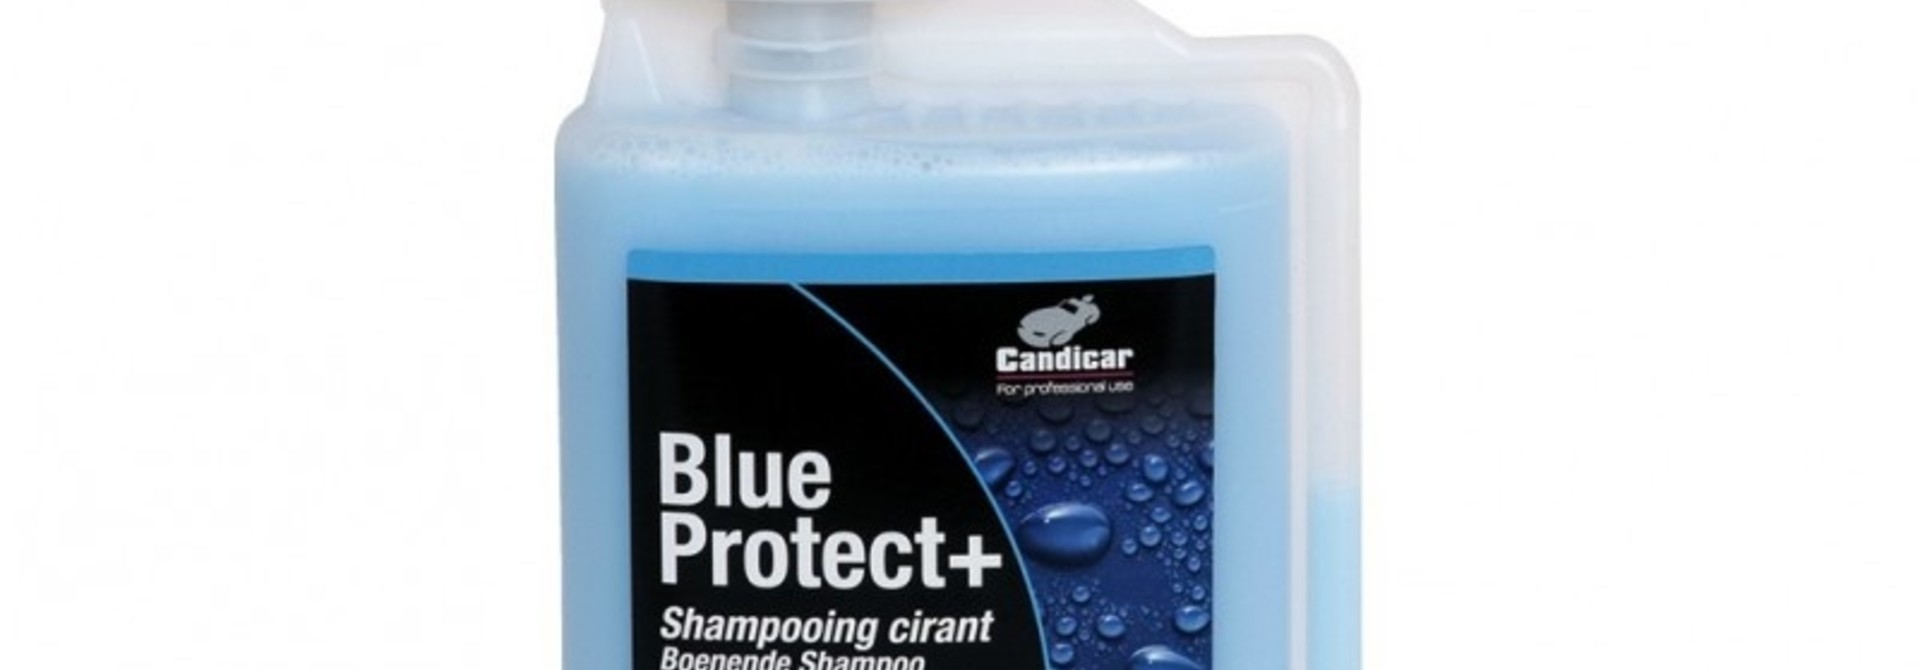 Blue Protect+ Shampoo